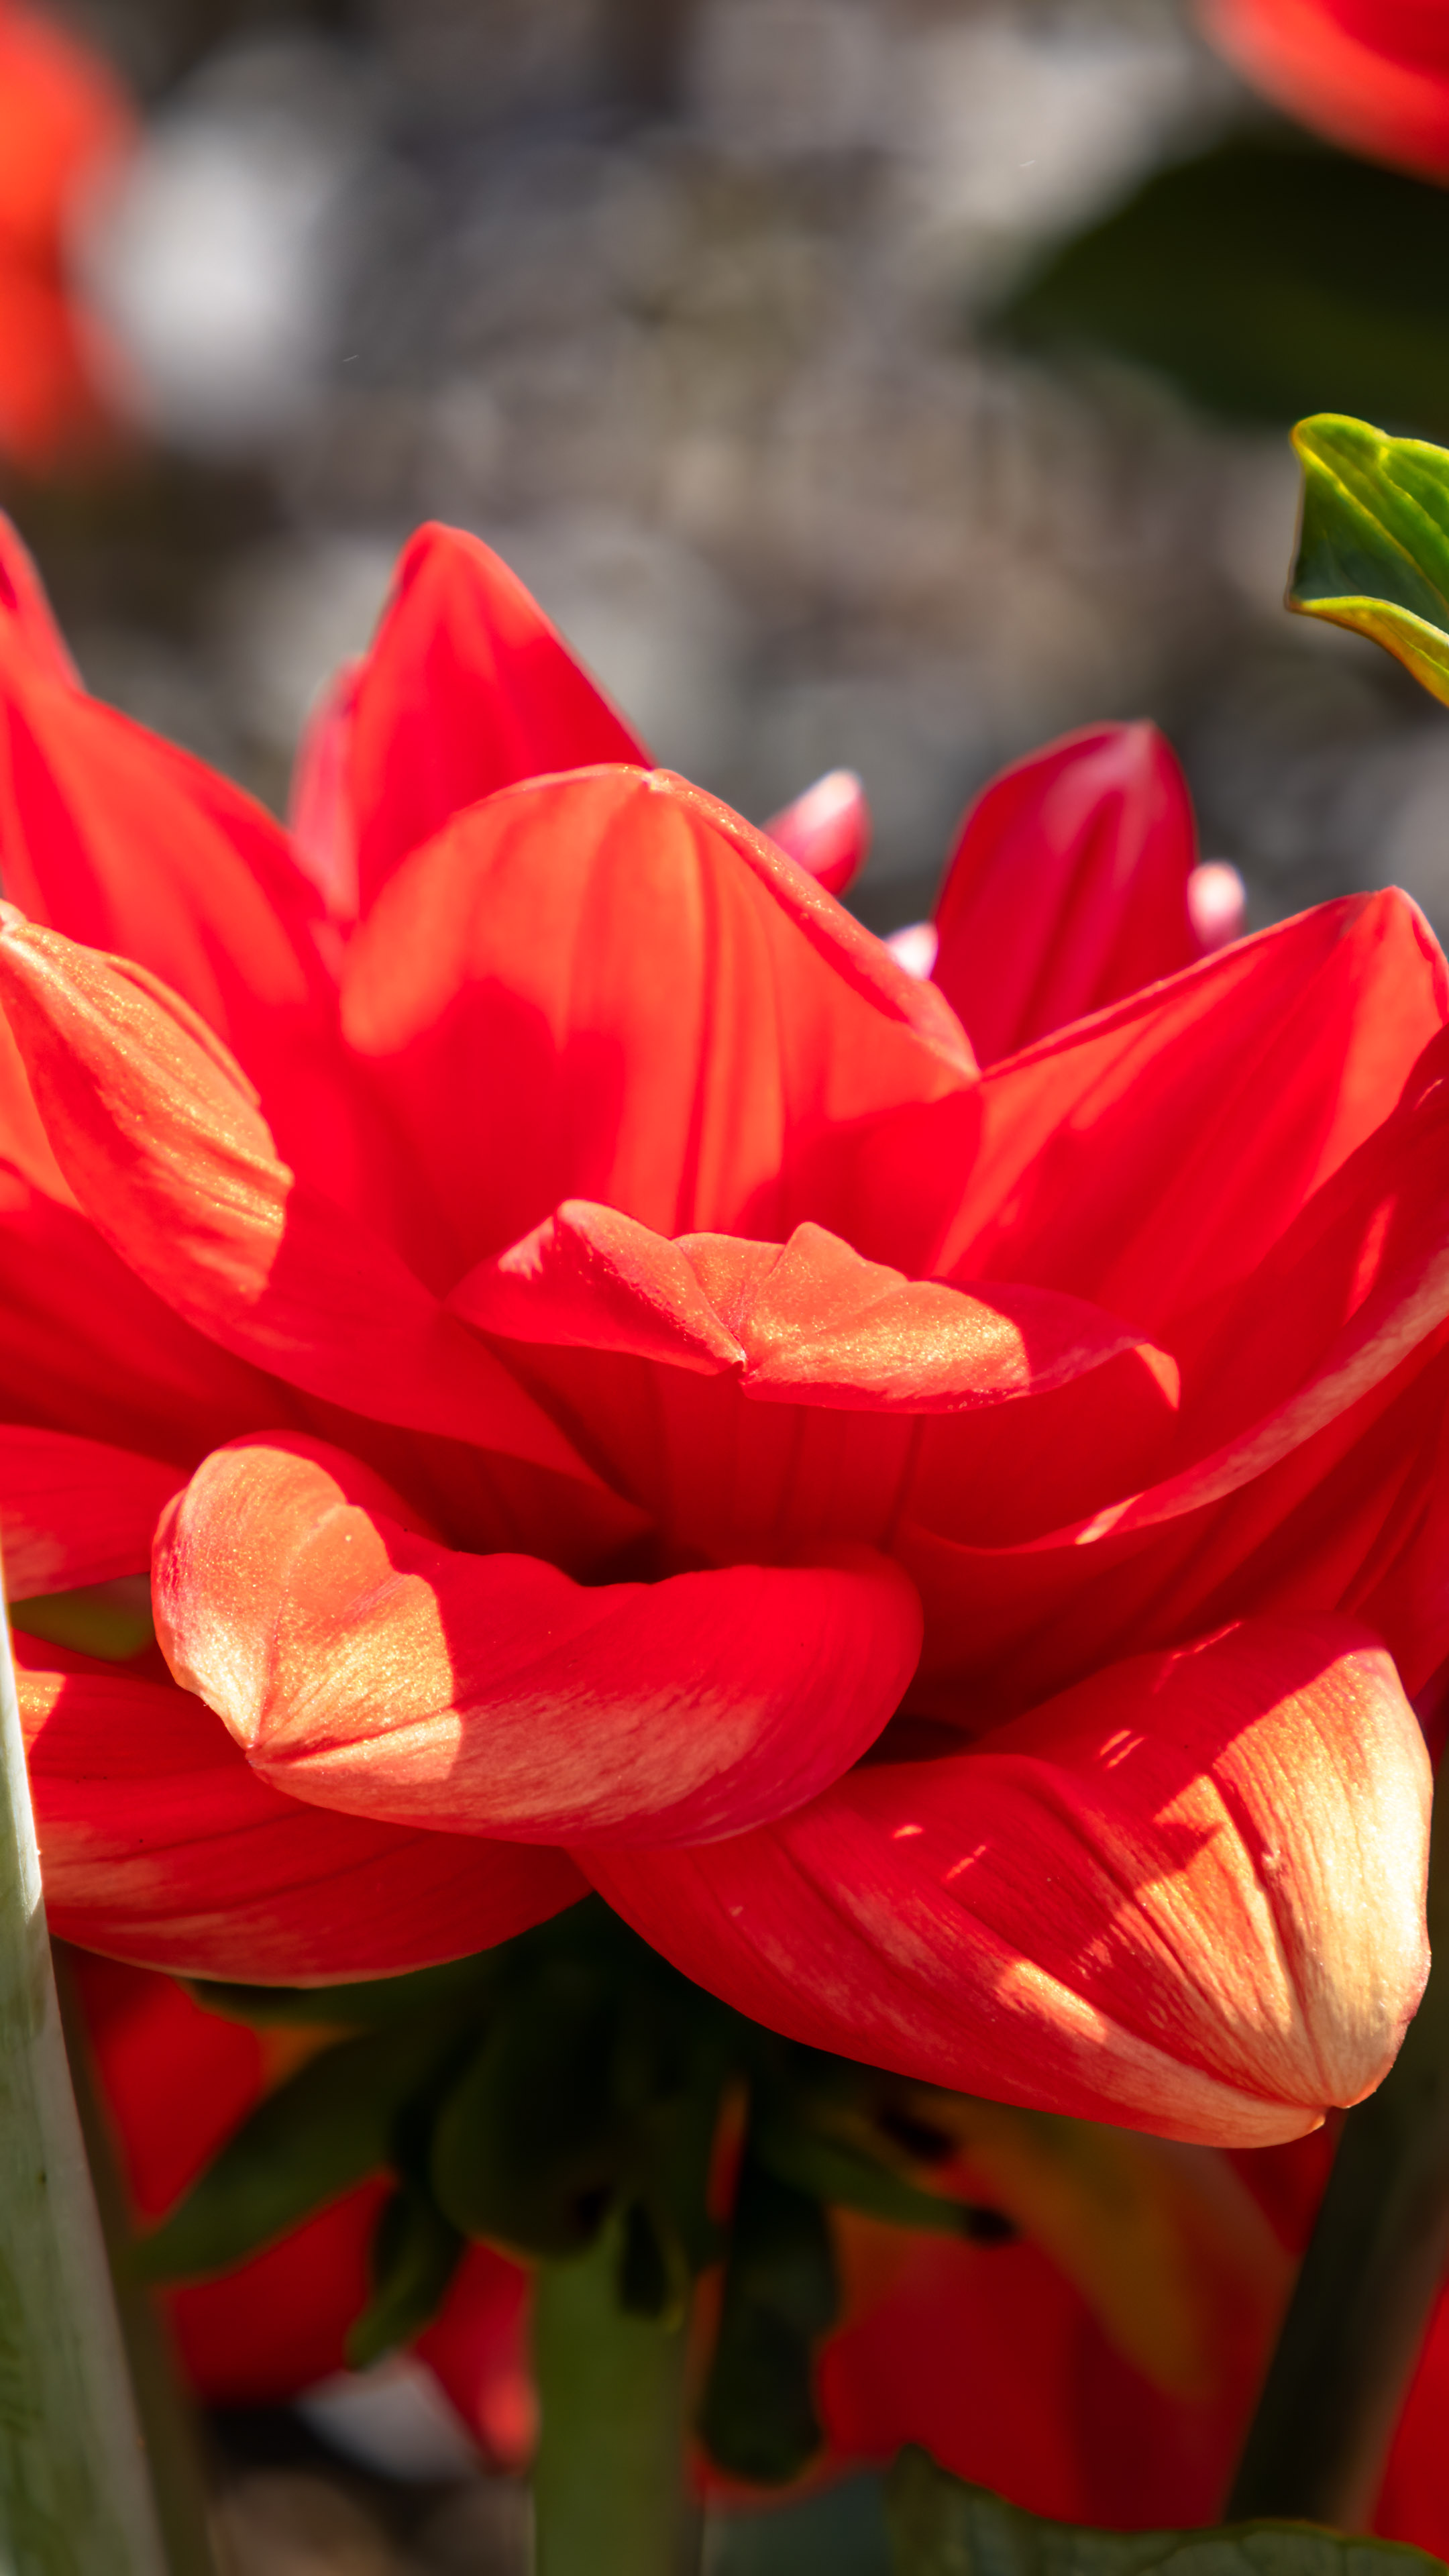 Allumez votre passion avec notre fond d'écran de fleur rouge pour iPhone, un affichage vibrant et enflammé qui capture l'essence de l'amour et de la romance.